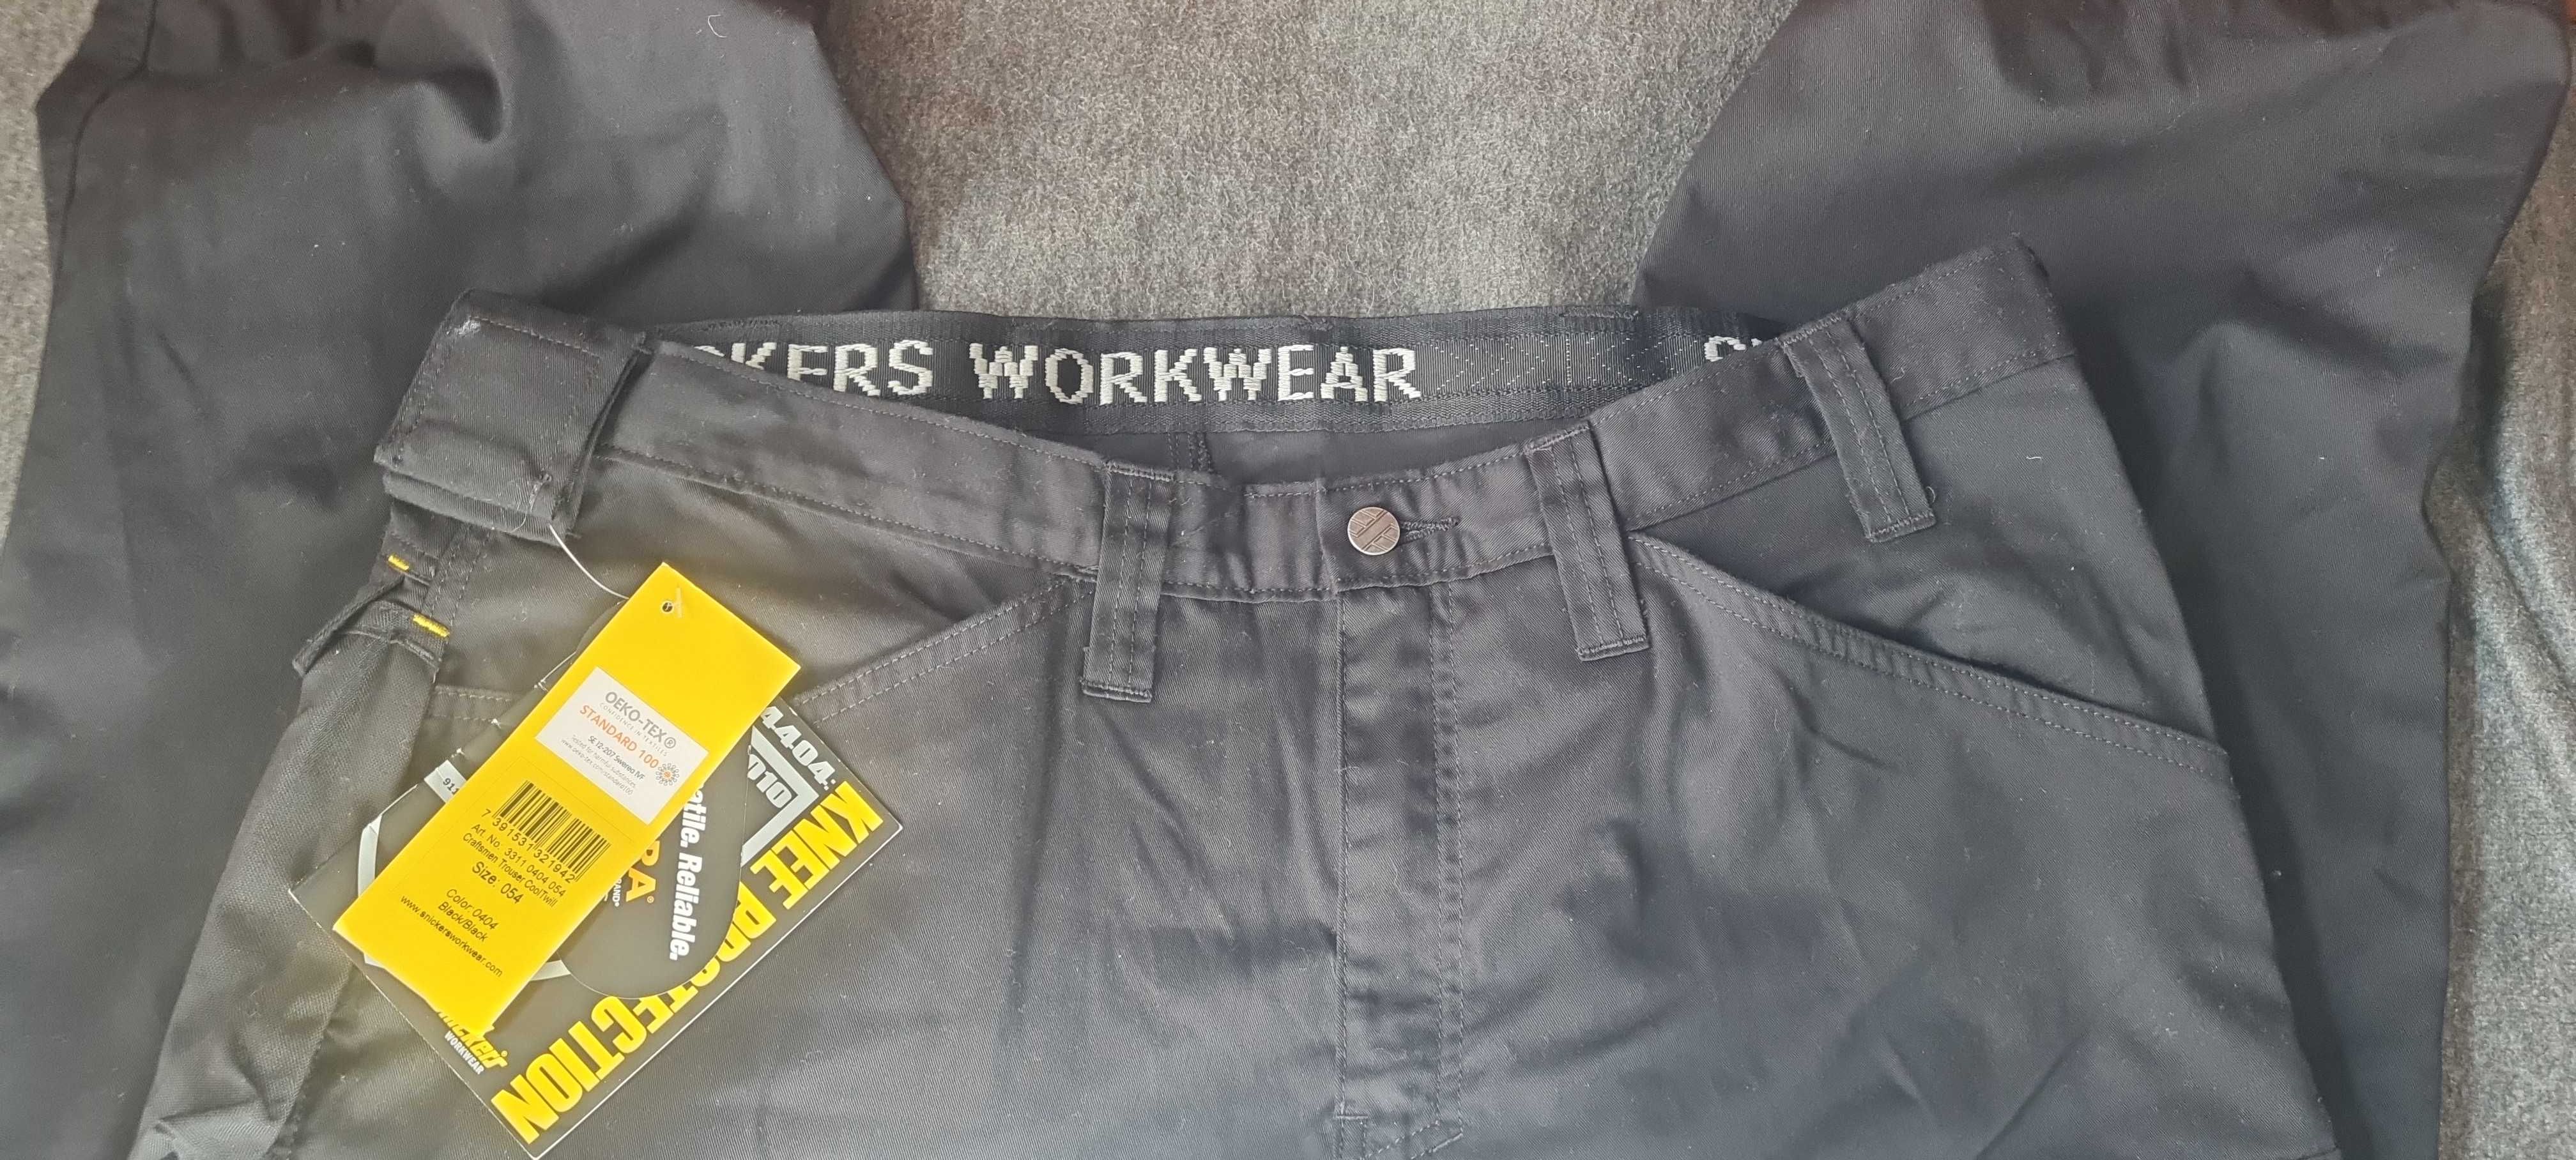 Spodnie robocze Snickers Workwear